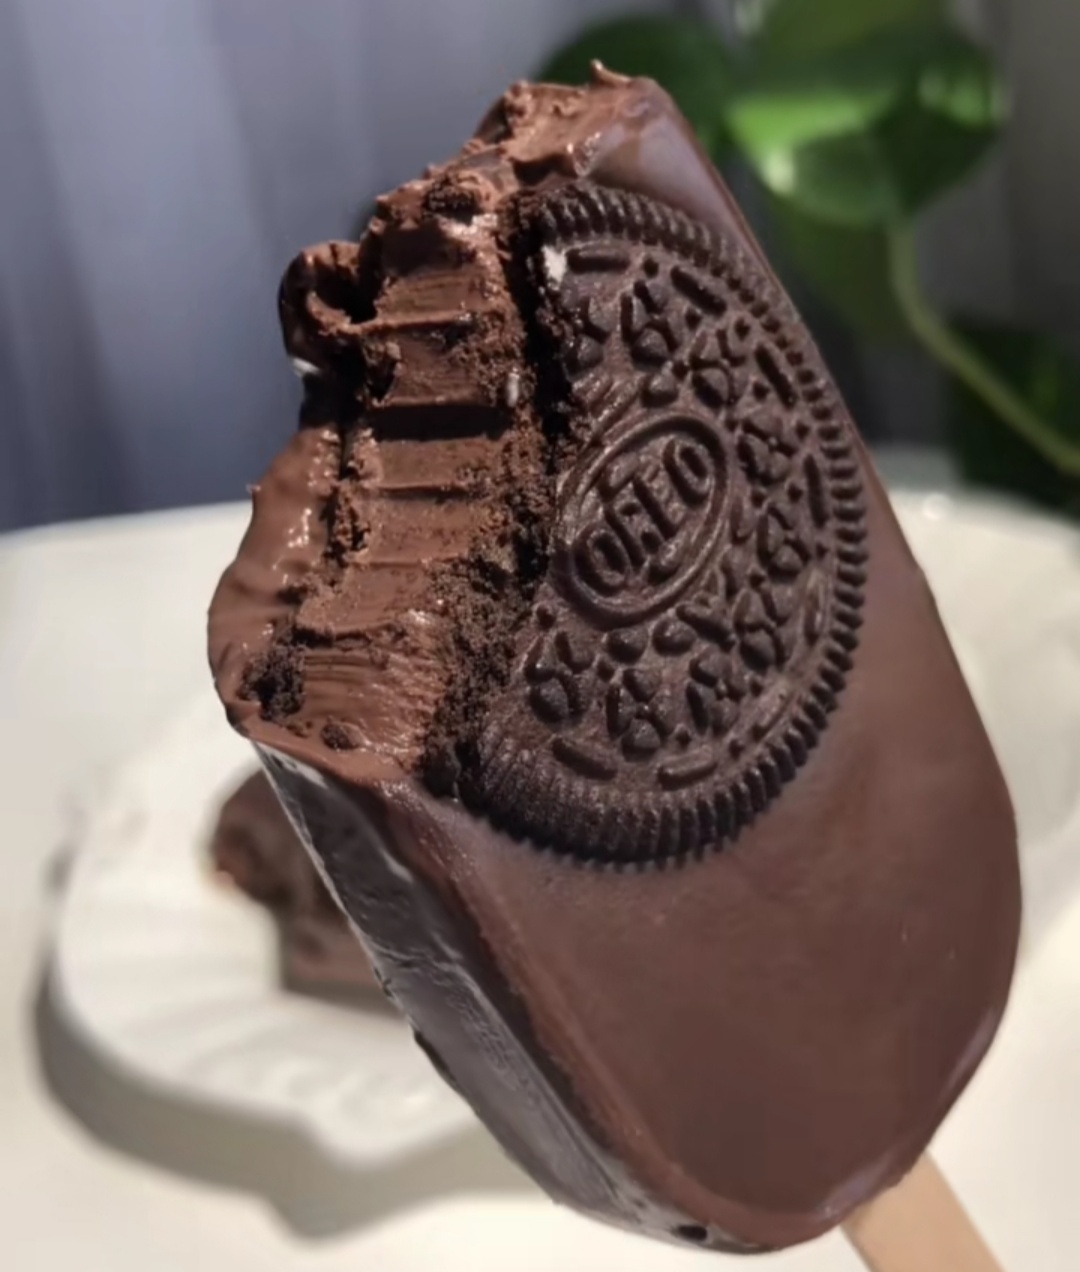 格兰朵奥利奥巧克力雪糕